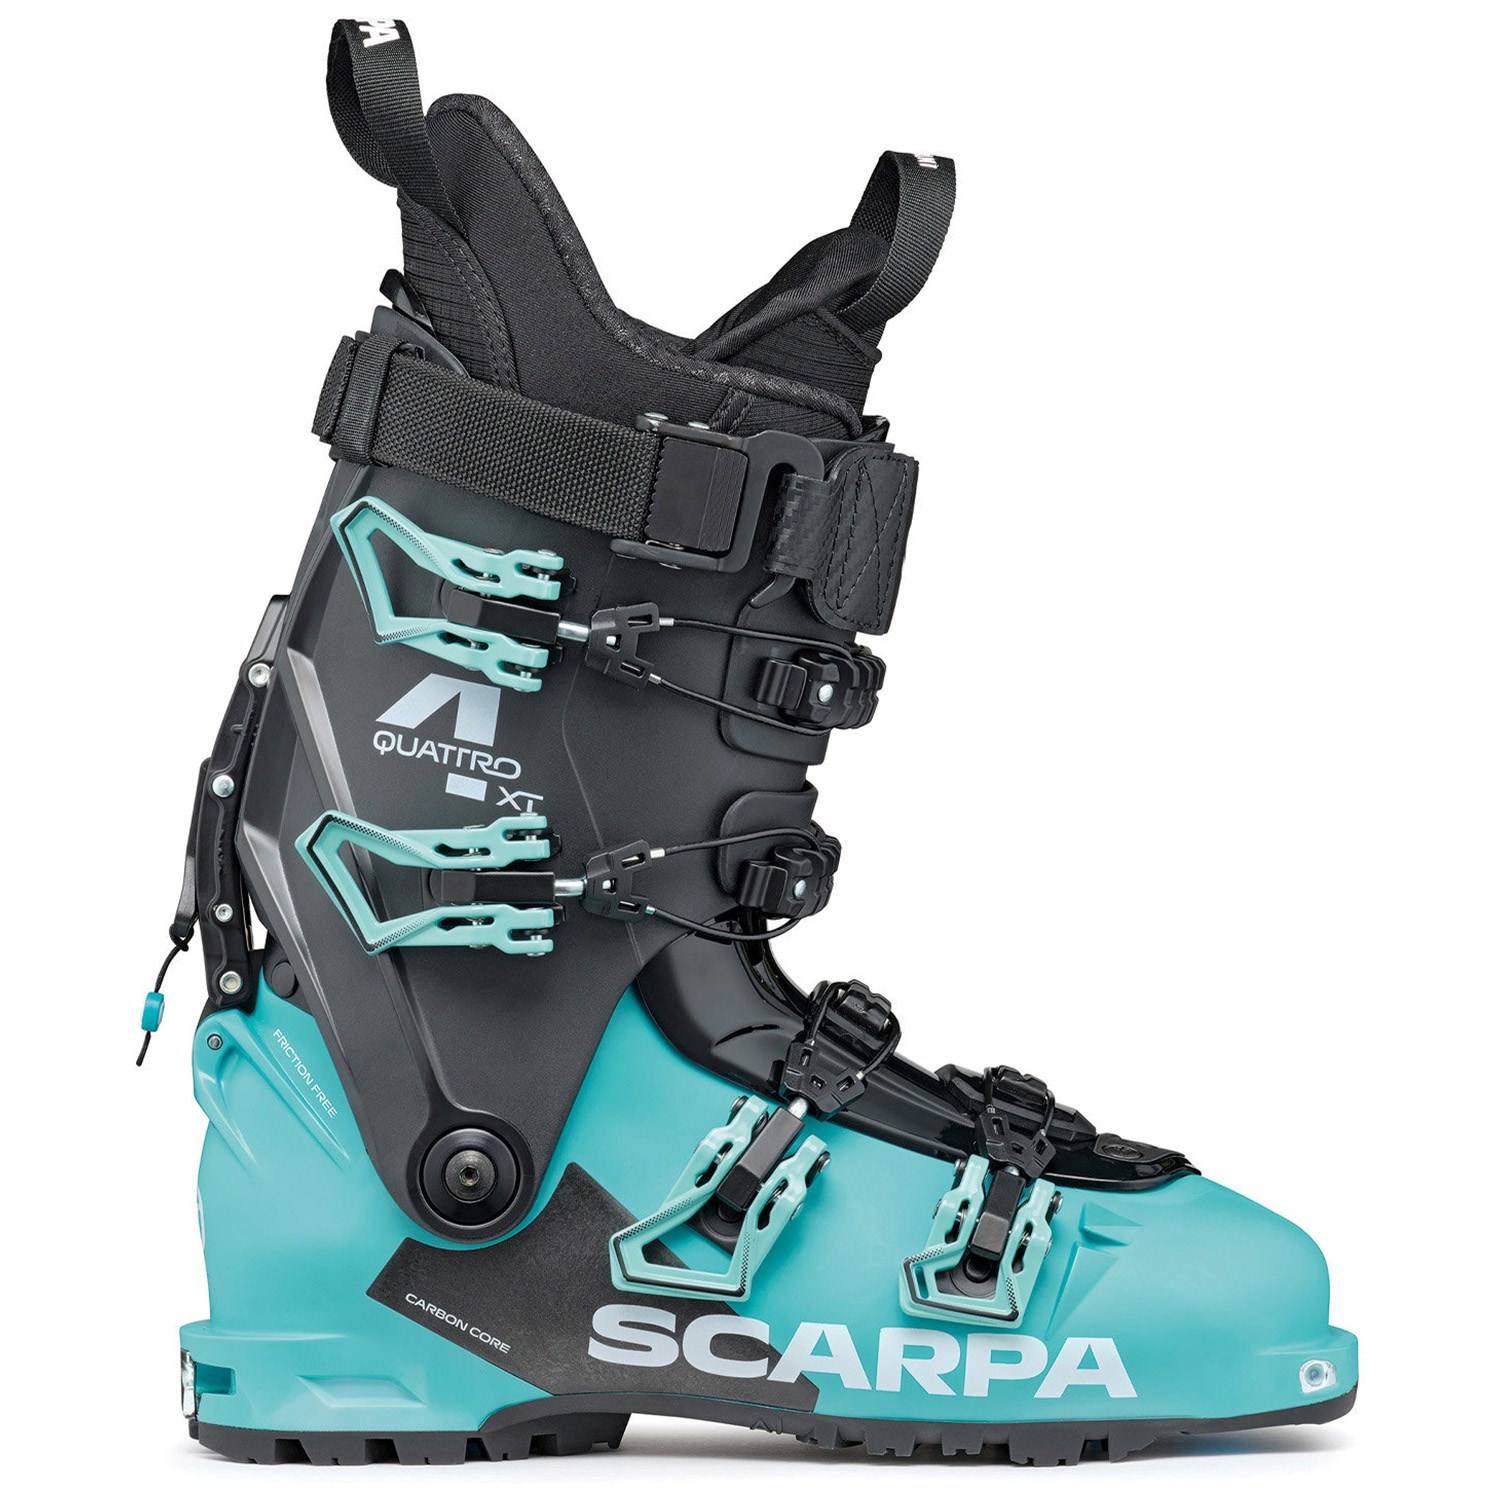 Ботинки Scarpa Quattro XT Touring Alpine лыжные, ceramic